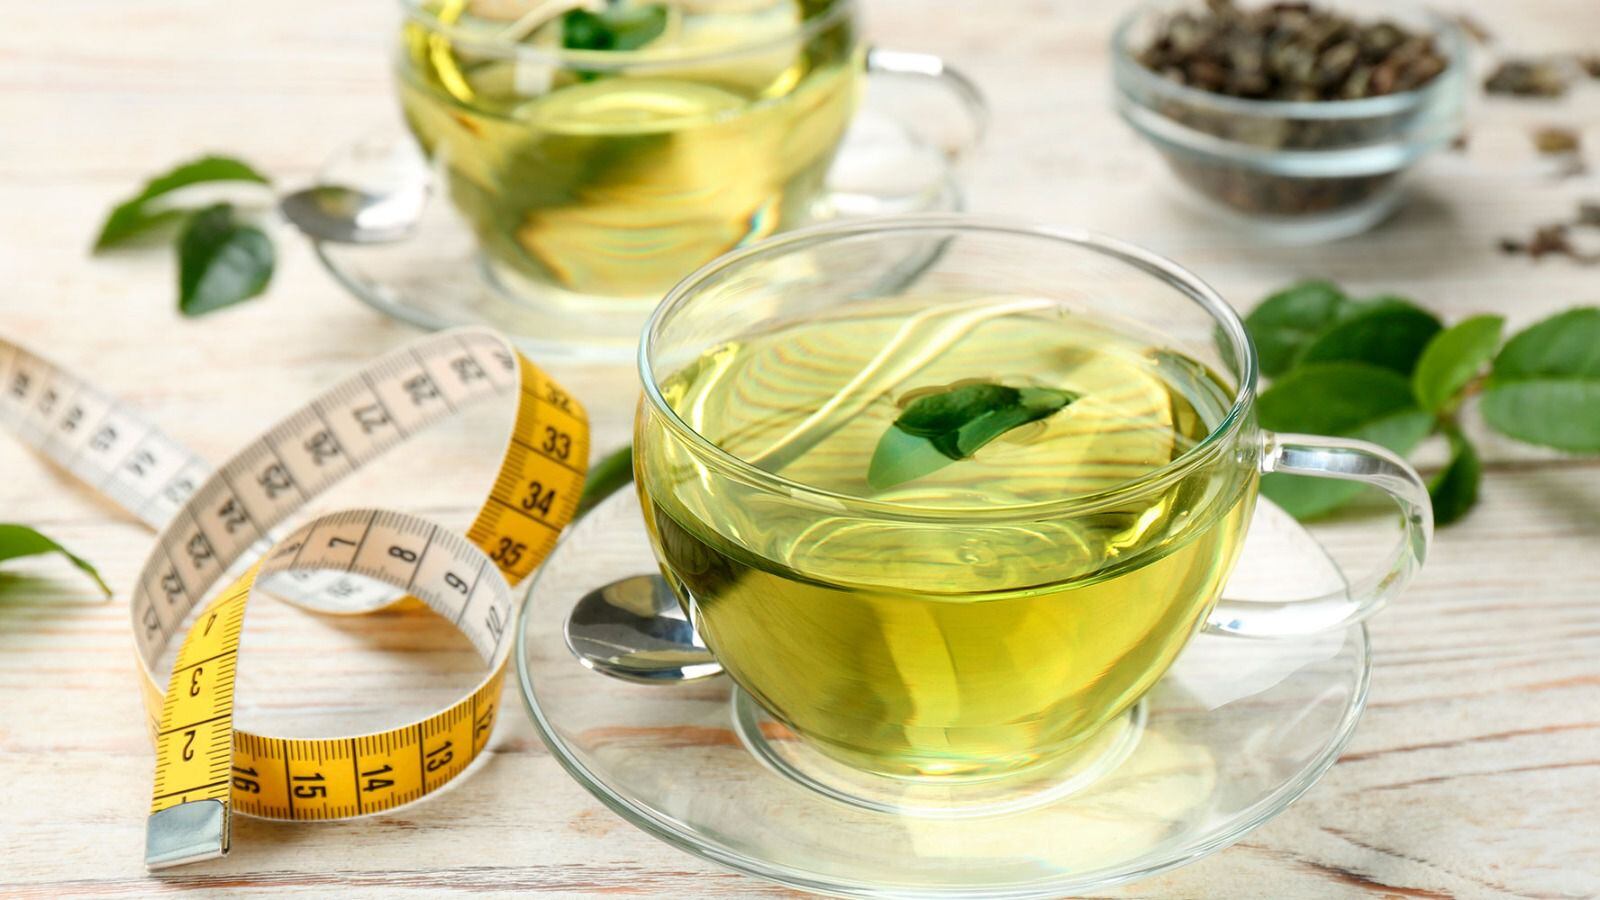 El té verde es una bebida saludable que se ha asociado con efectos para bajar de peso. (Foto: Shutterstock).